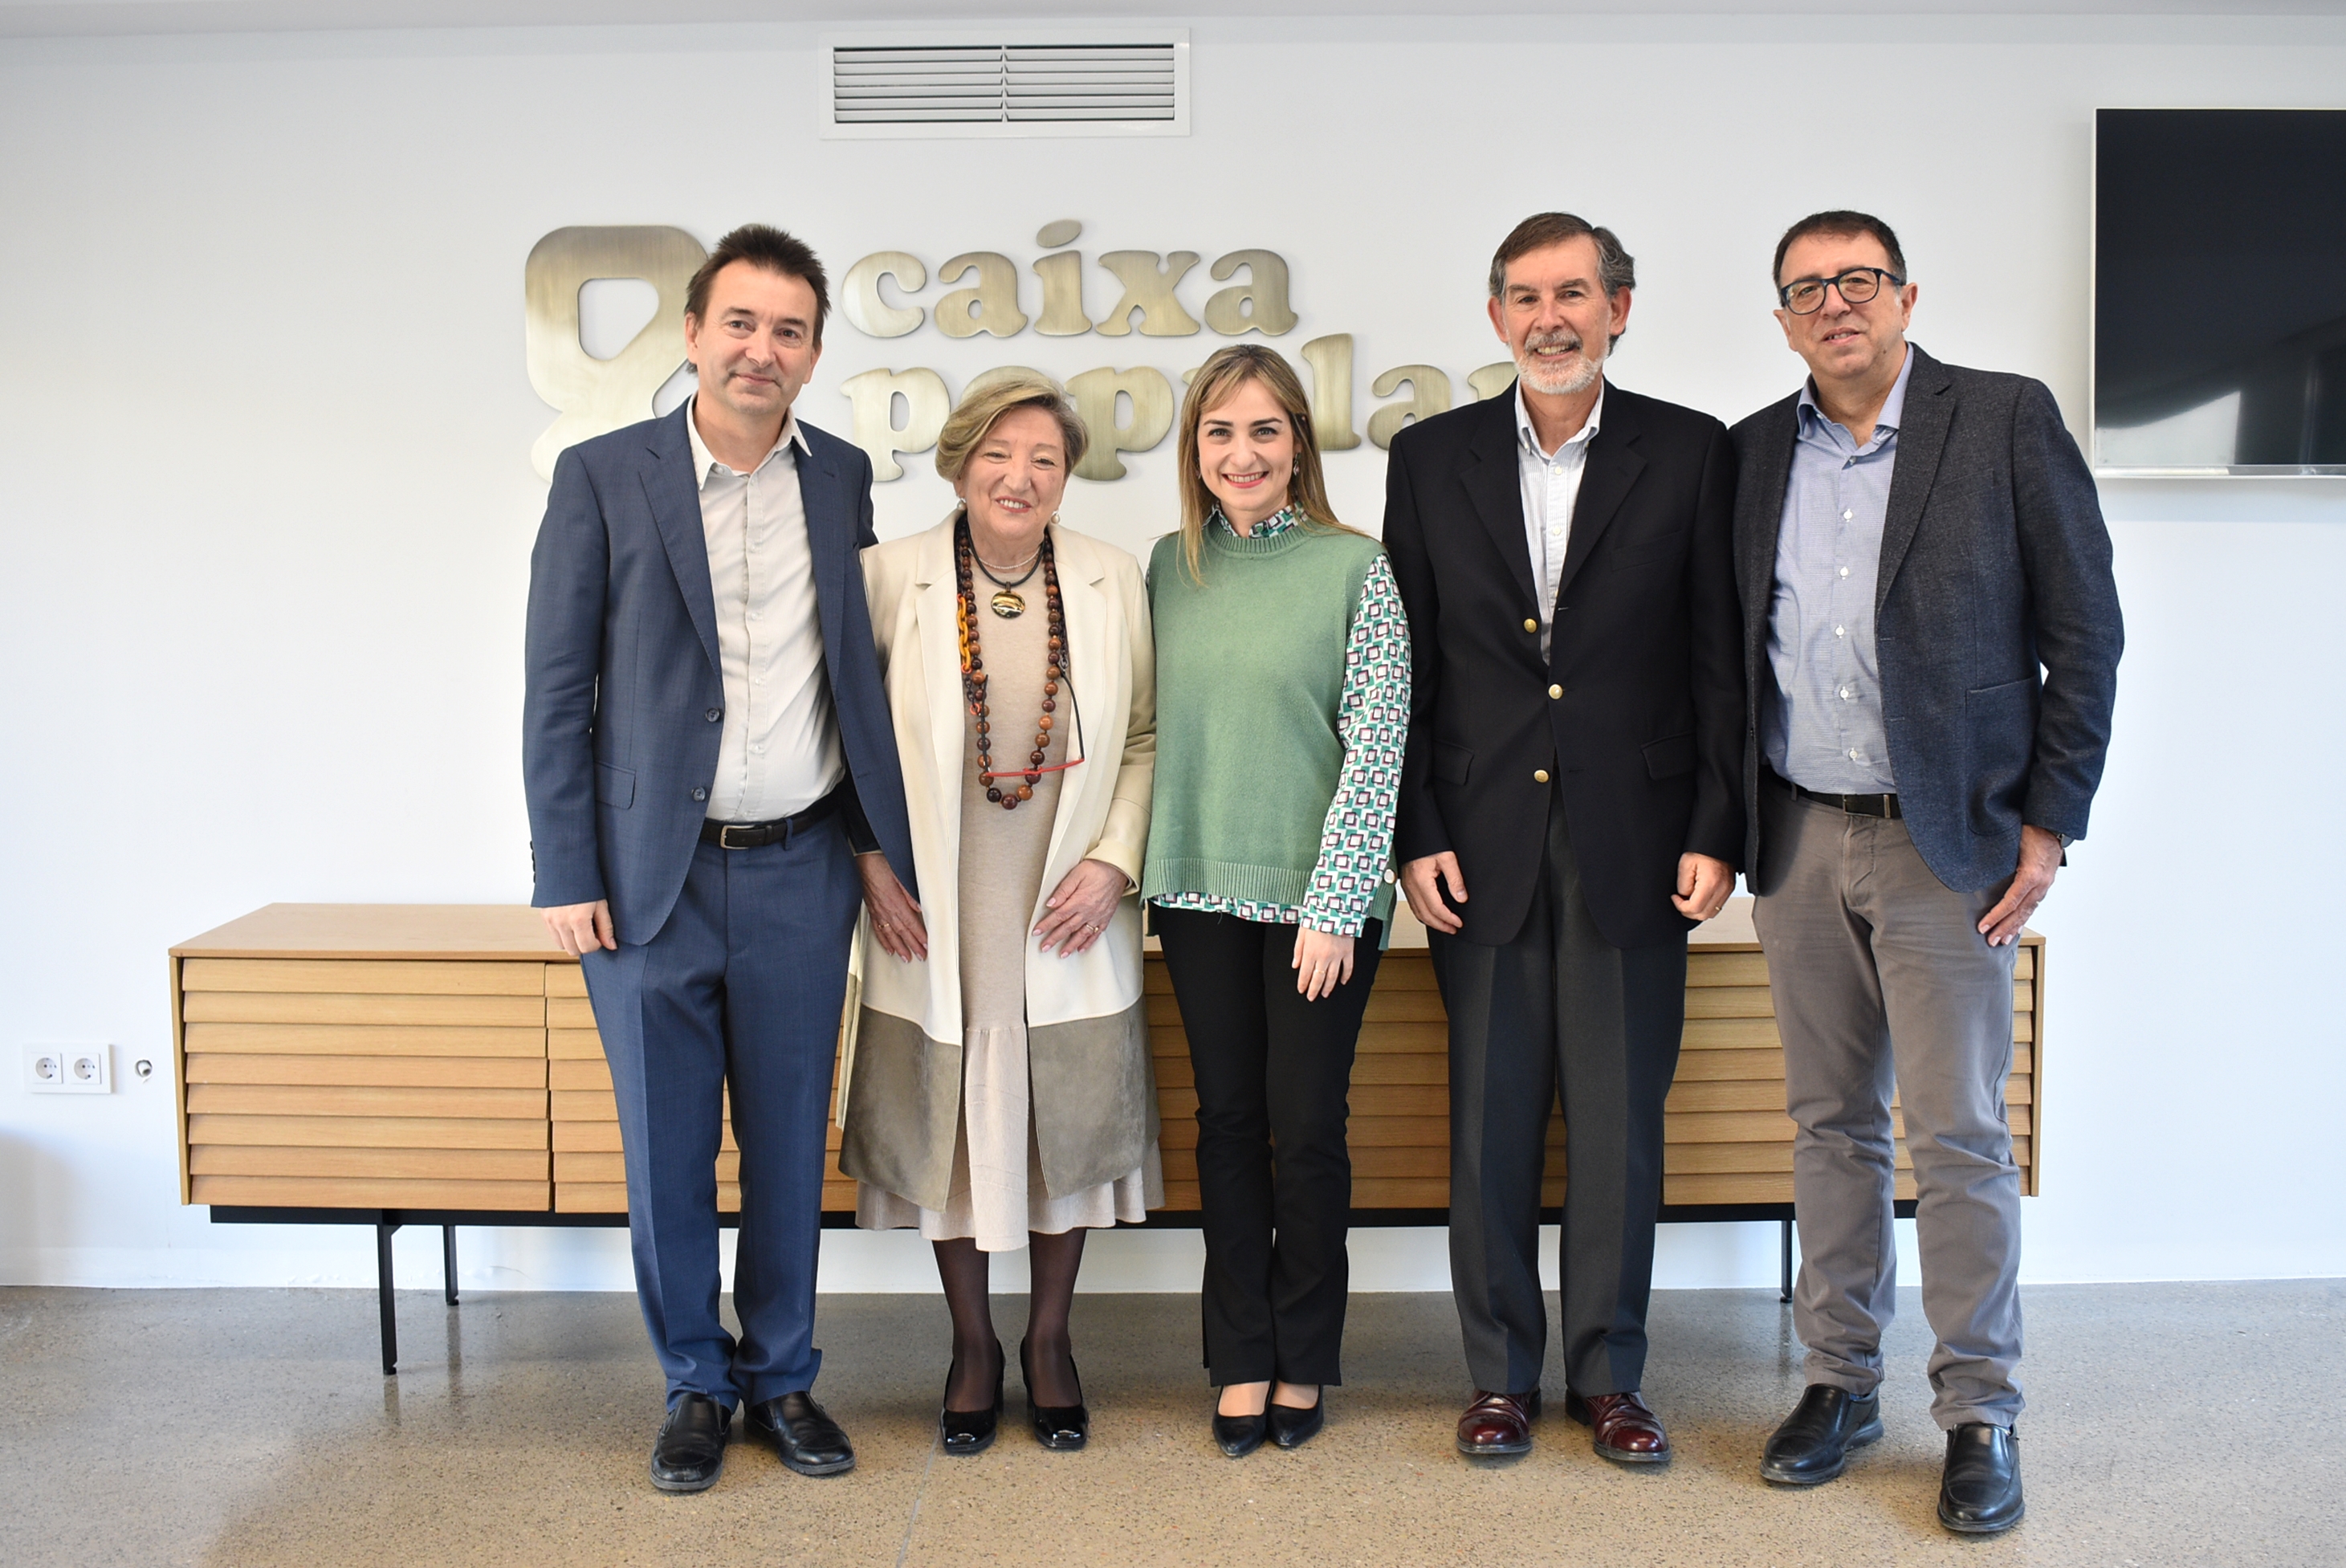 Caixa Popular se convierte en ‘Embajador de honor de INCLIVA’ por su apoyo a la investigación sanitaria